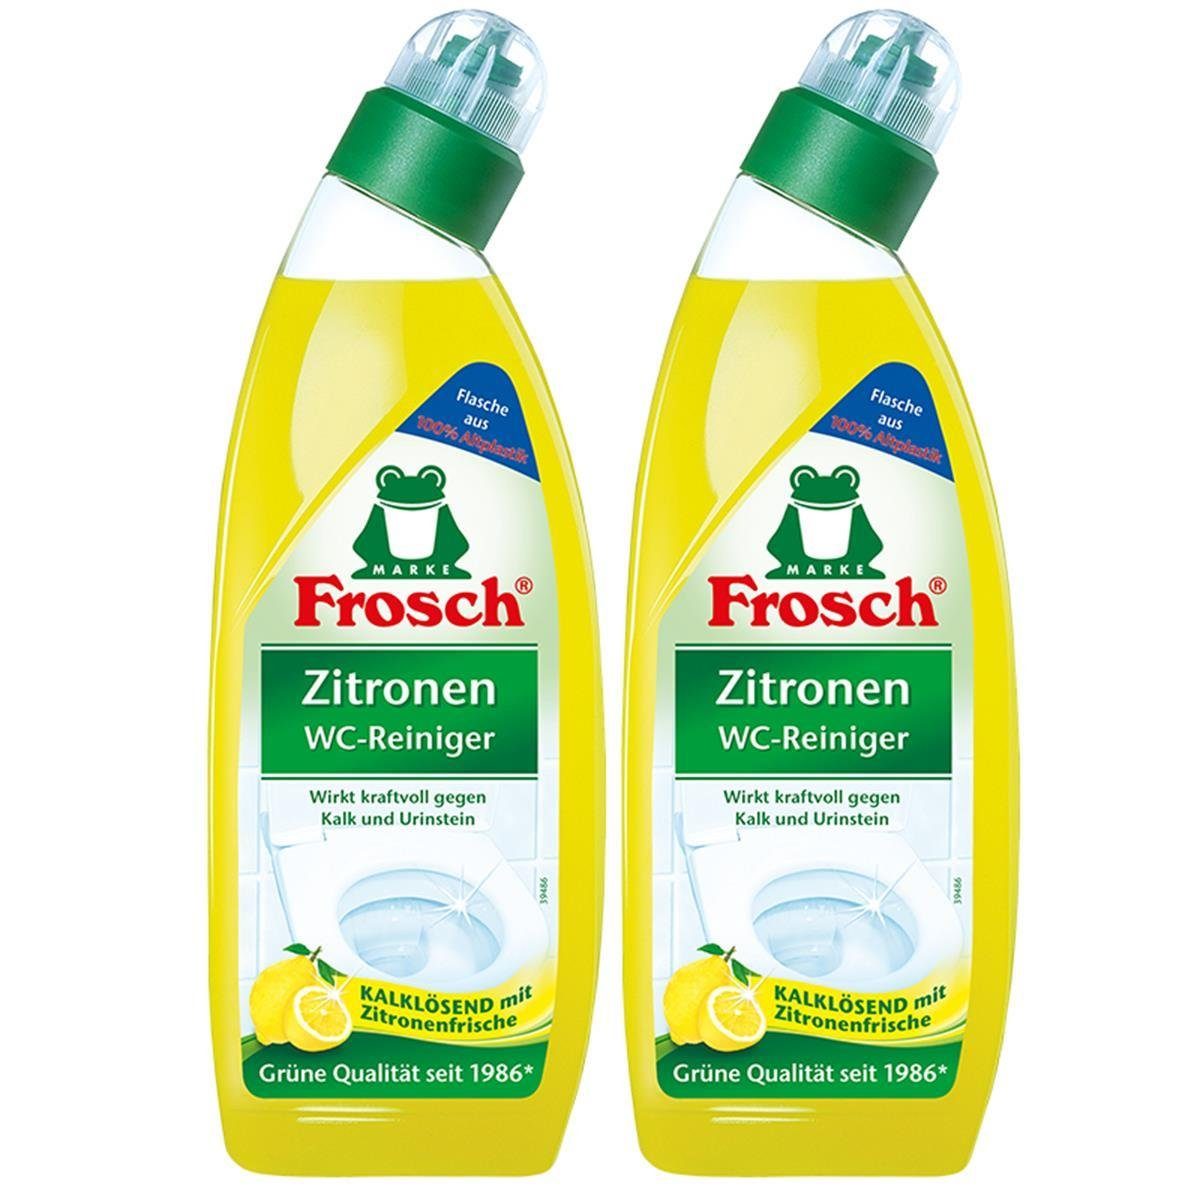 FROSCH 2x Frosch Zitronen WC-Reiniger 750 ml - Kalklösend mit Zitrone WC-Reiniger